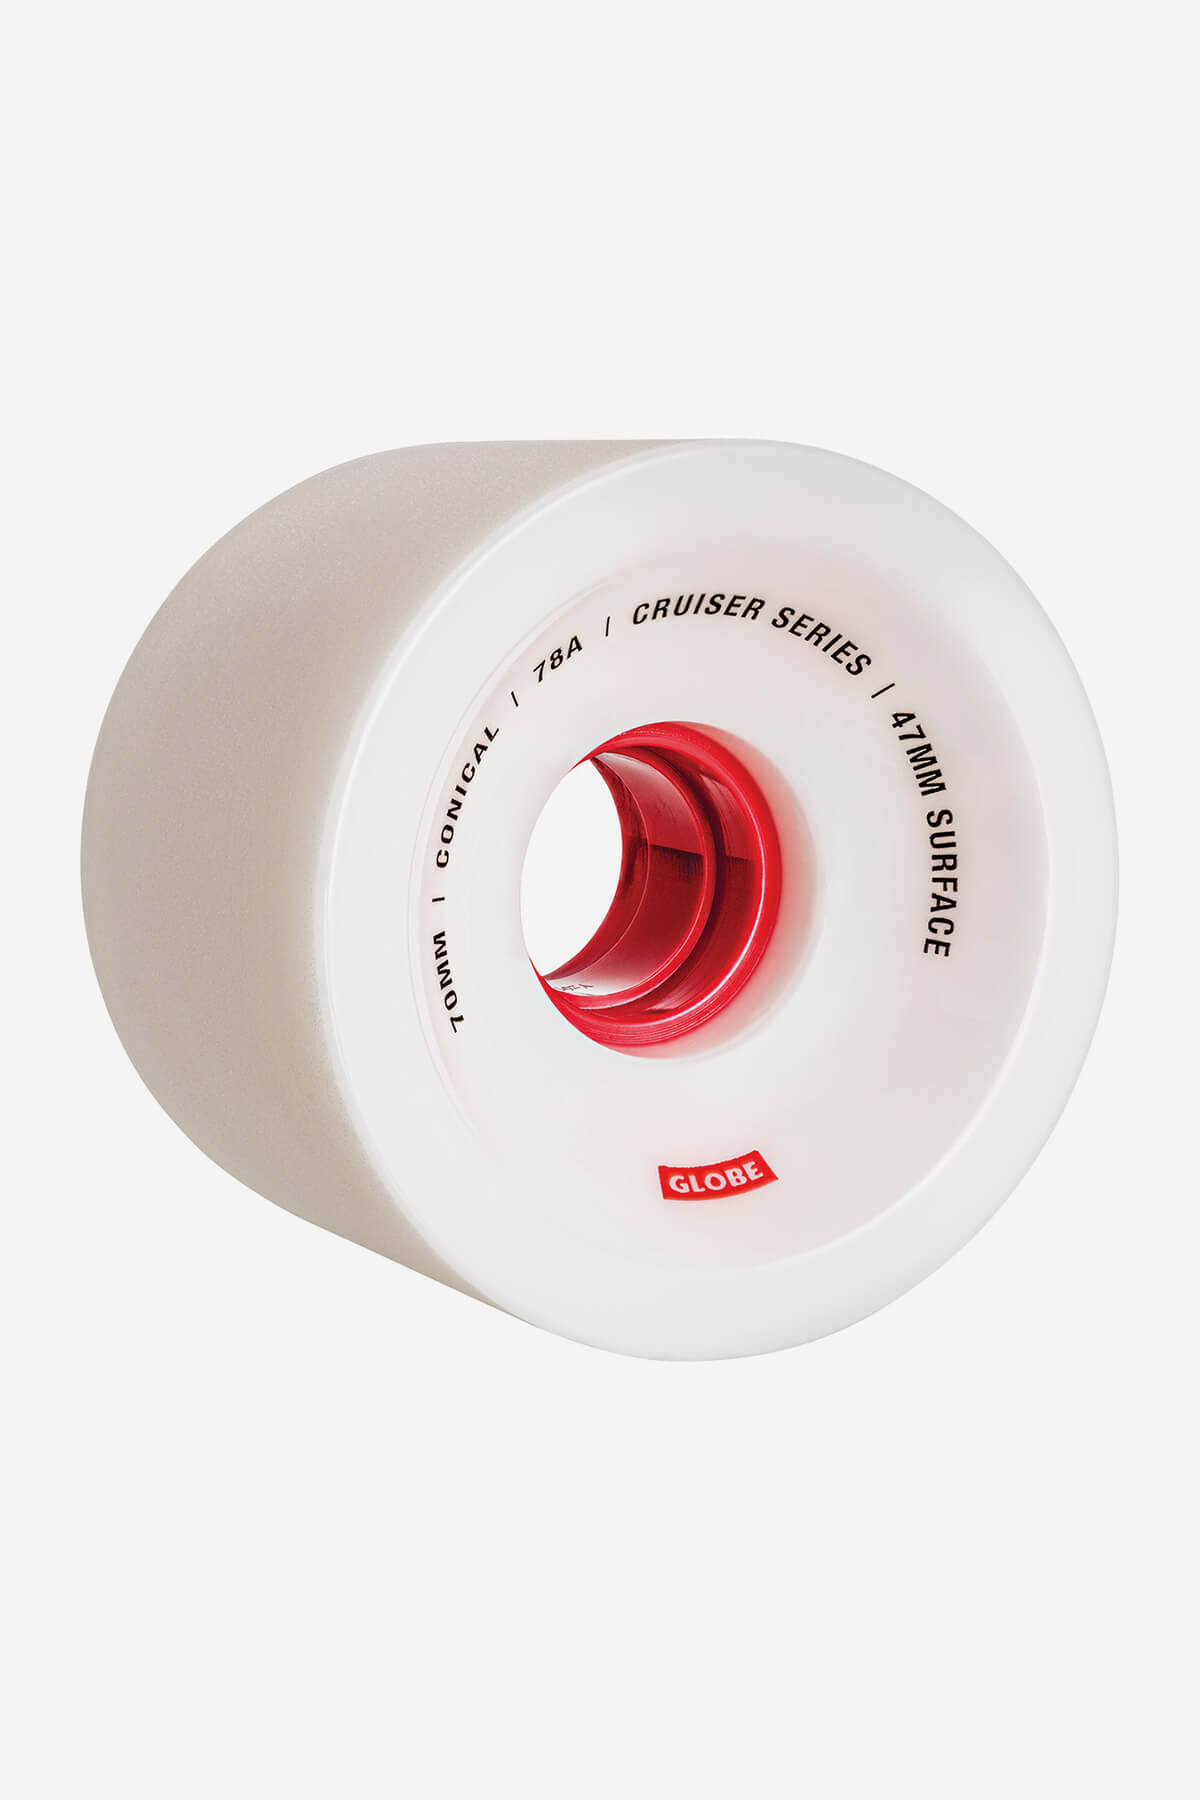 Globe Rollen Konisch Cruiser Skateboard  Wheel  70mm in White/Red/70